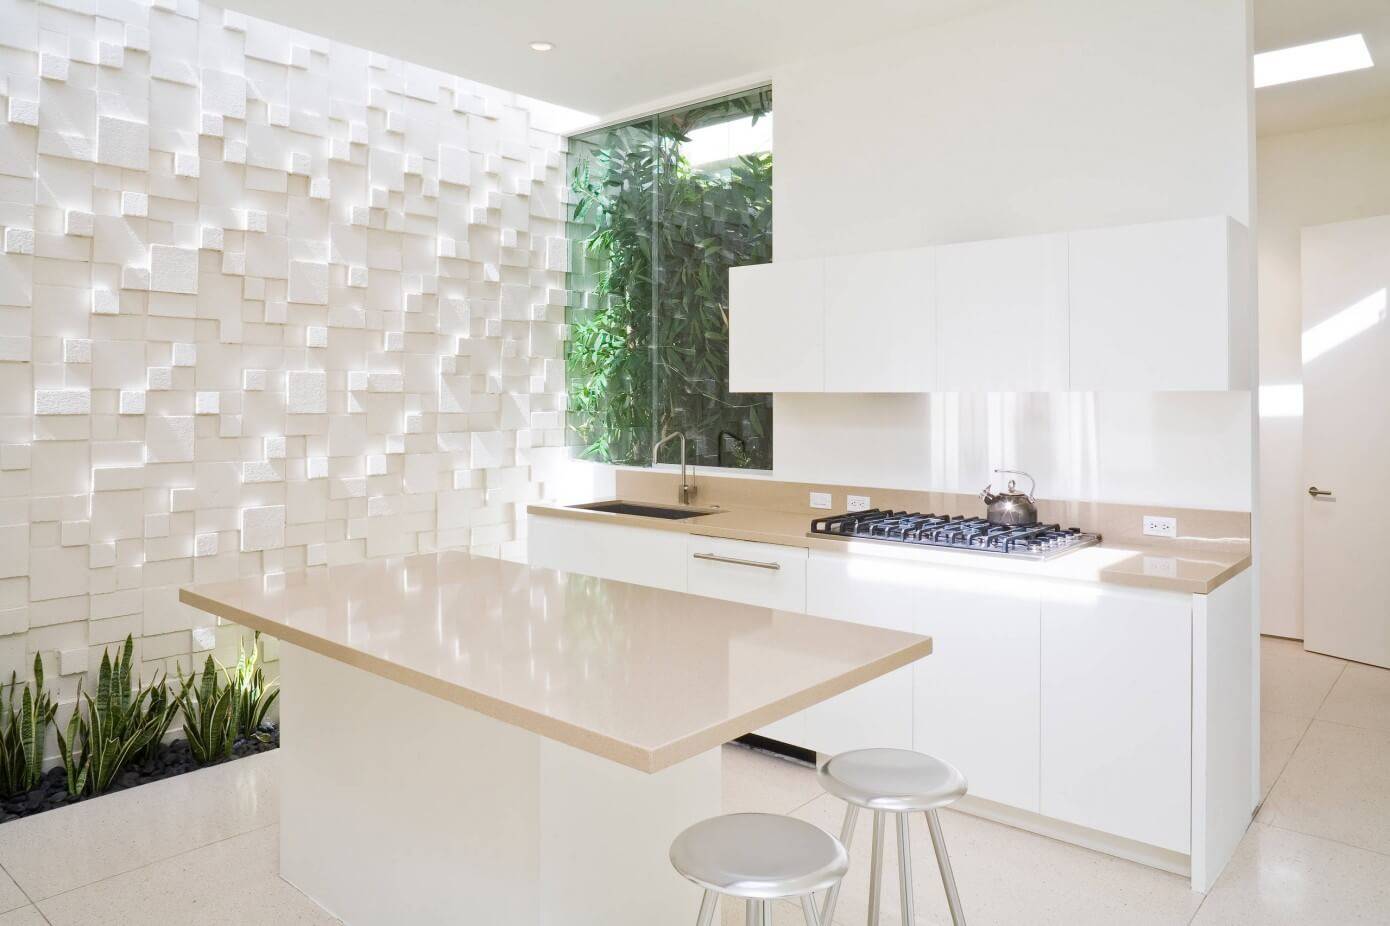 Современные и практичные идеи дизайна стен на кухне (+45 фото)